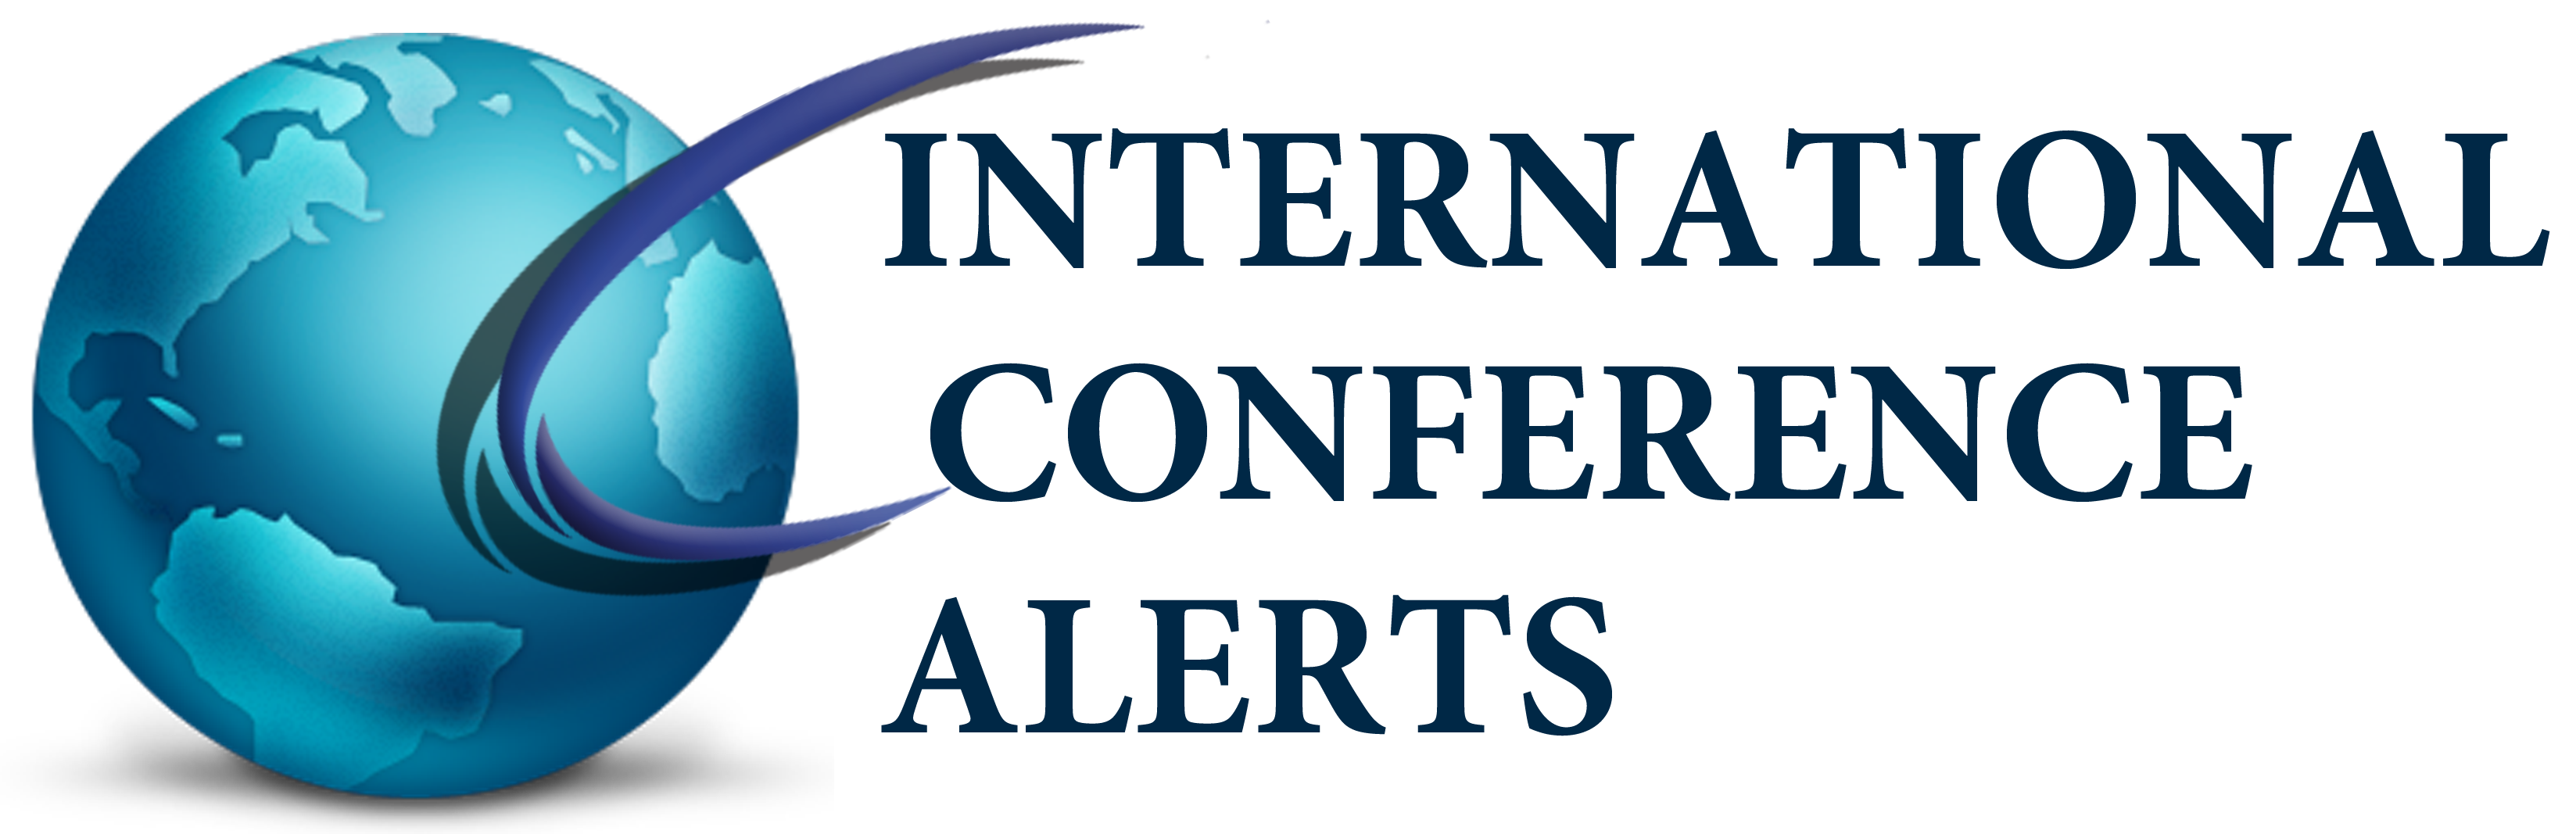 International Conference Alerts' website